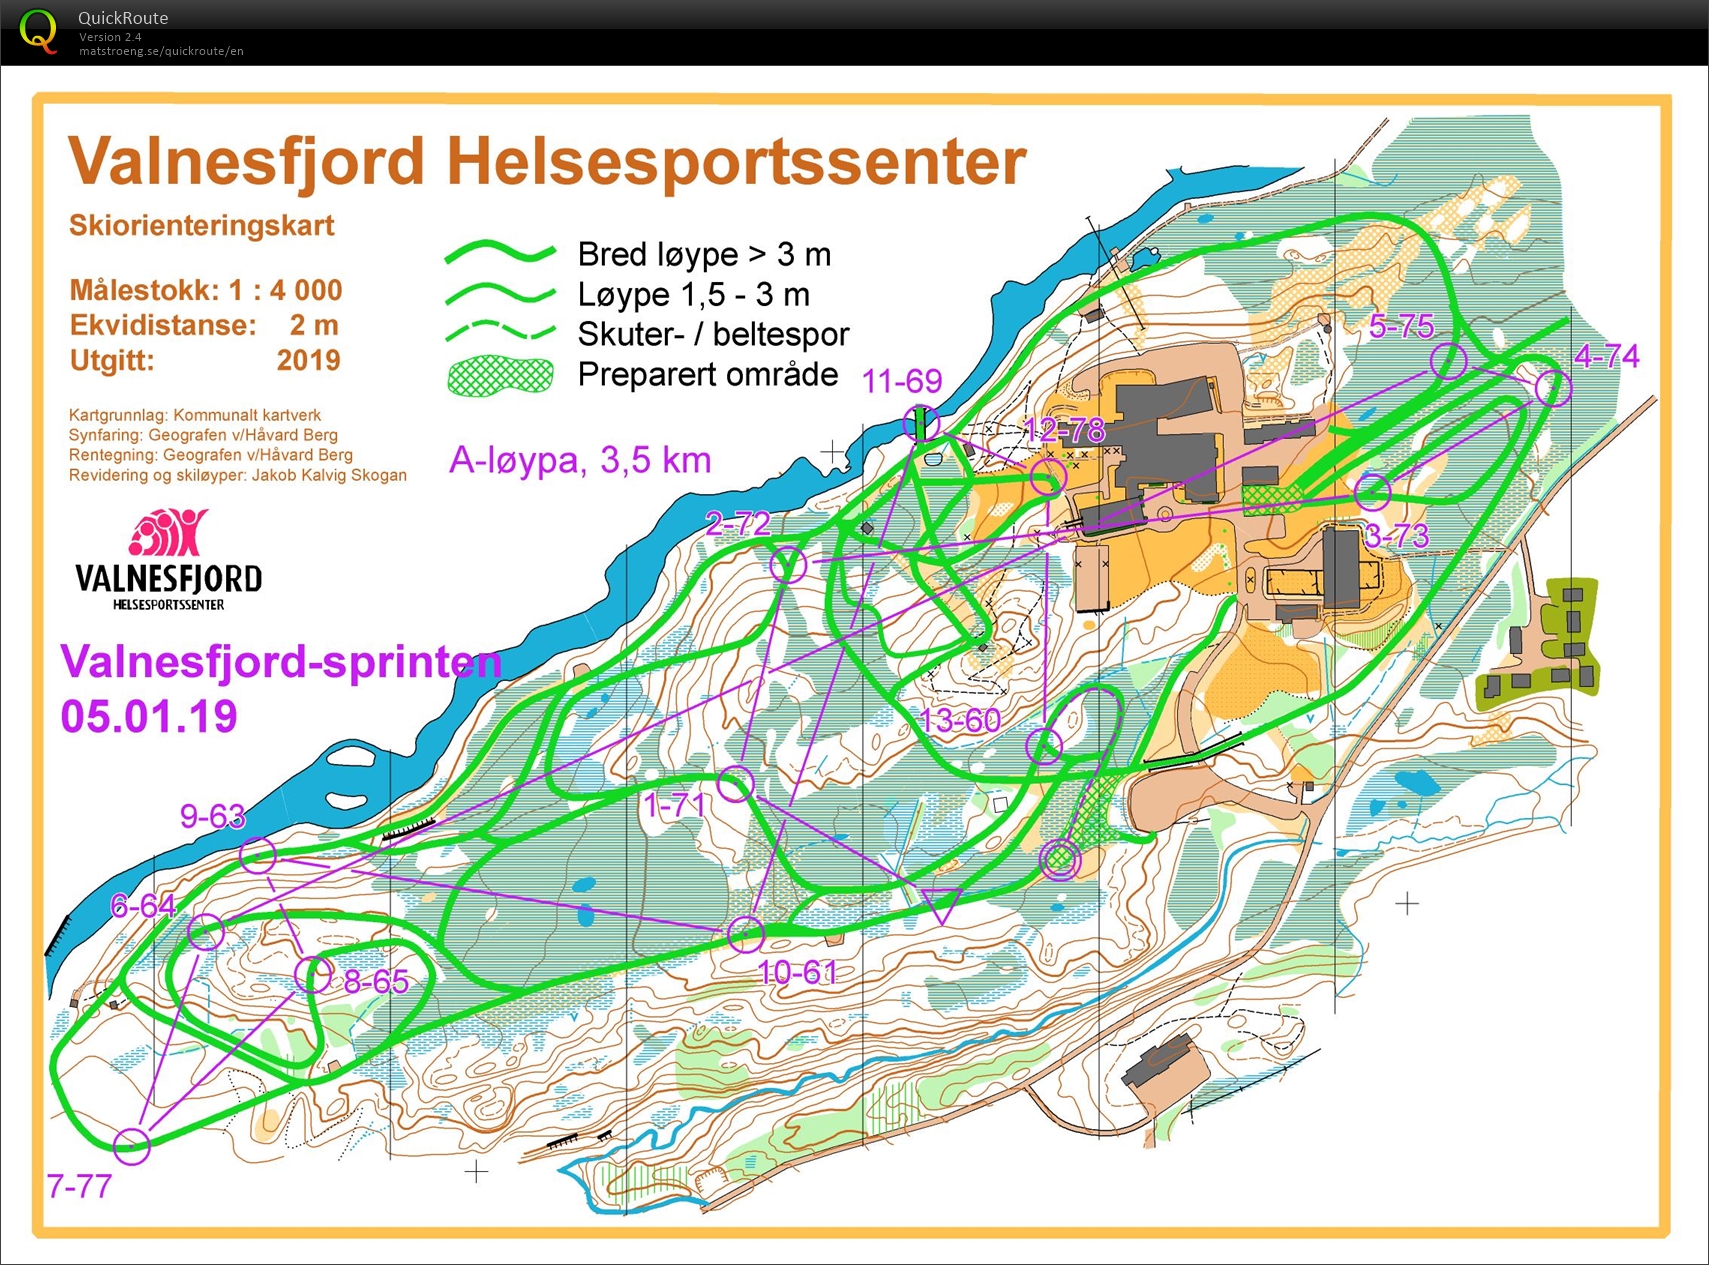 Valnesfjordsprinten Skiorientering (2020-01-05)